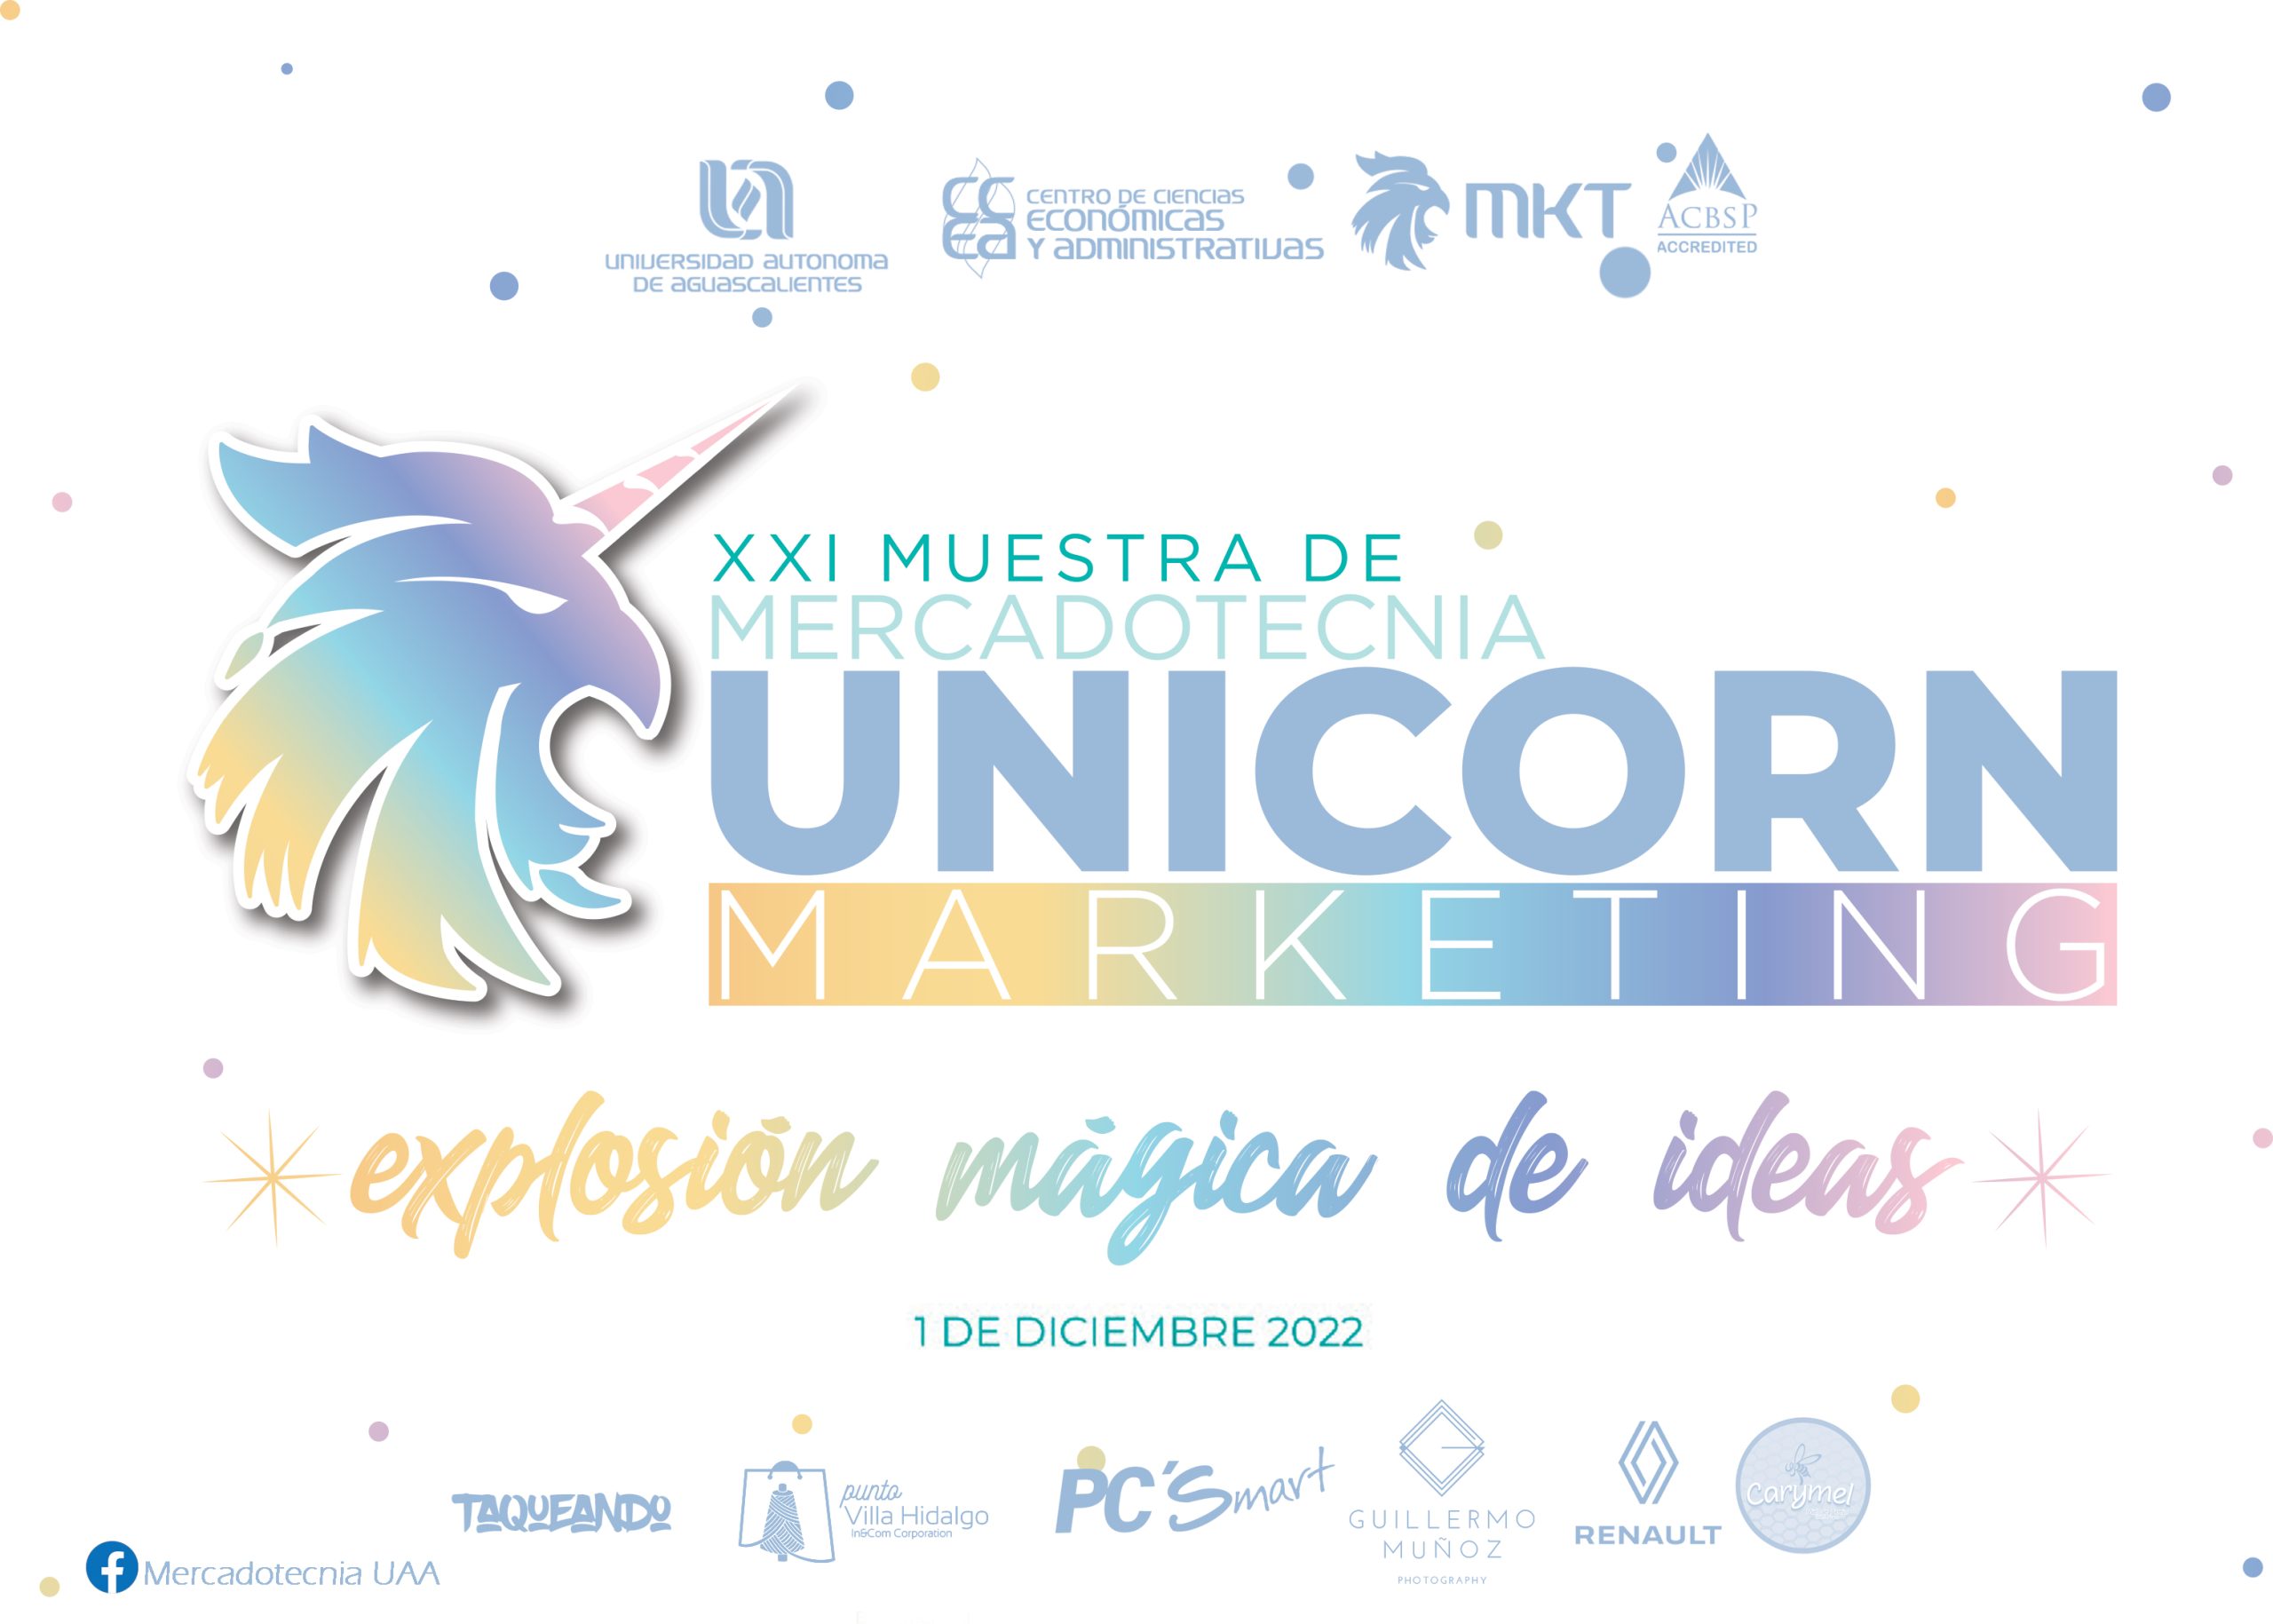 XXI Muestra de Mercadotecnia “Unicorn Marketing. Explosión mágica de ideas”